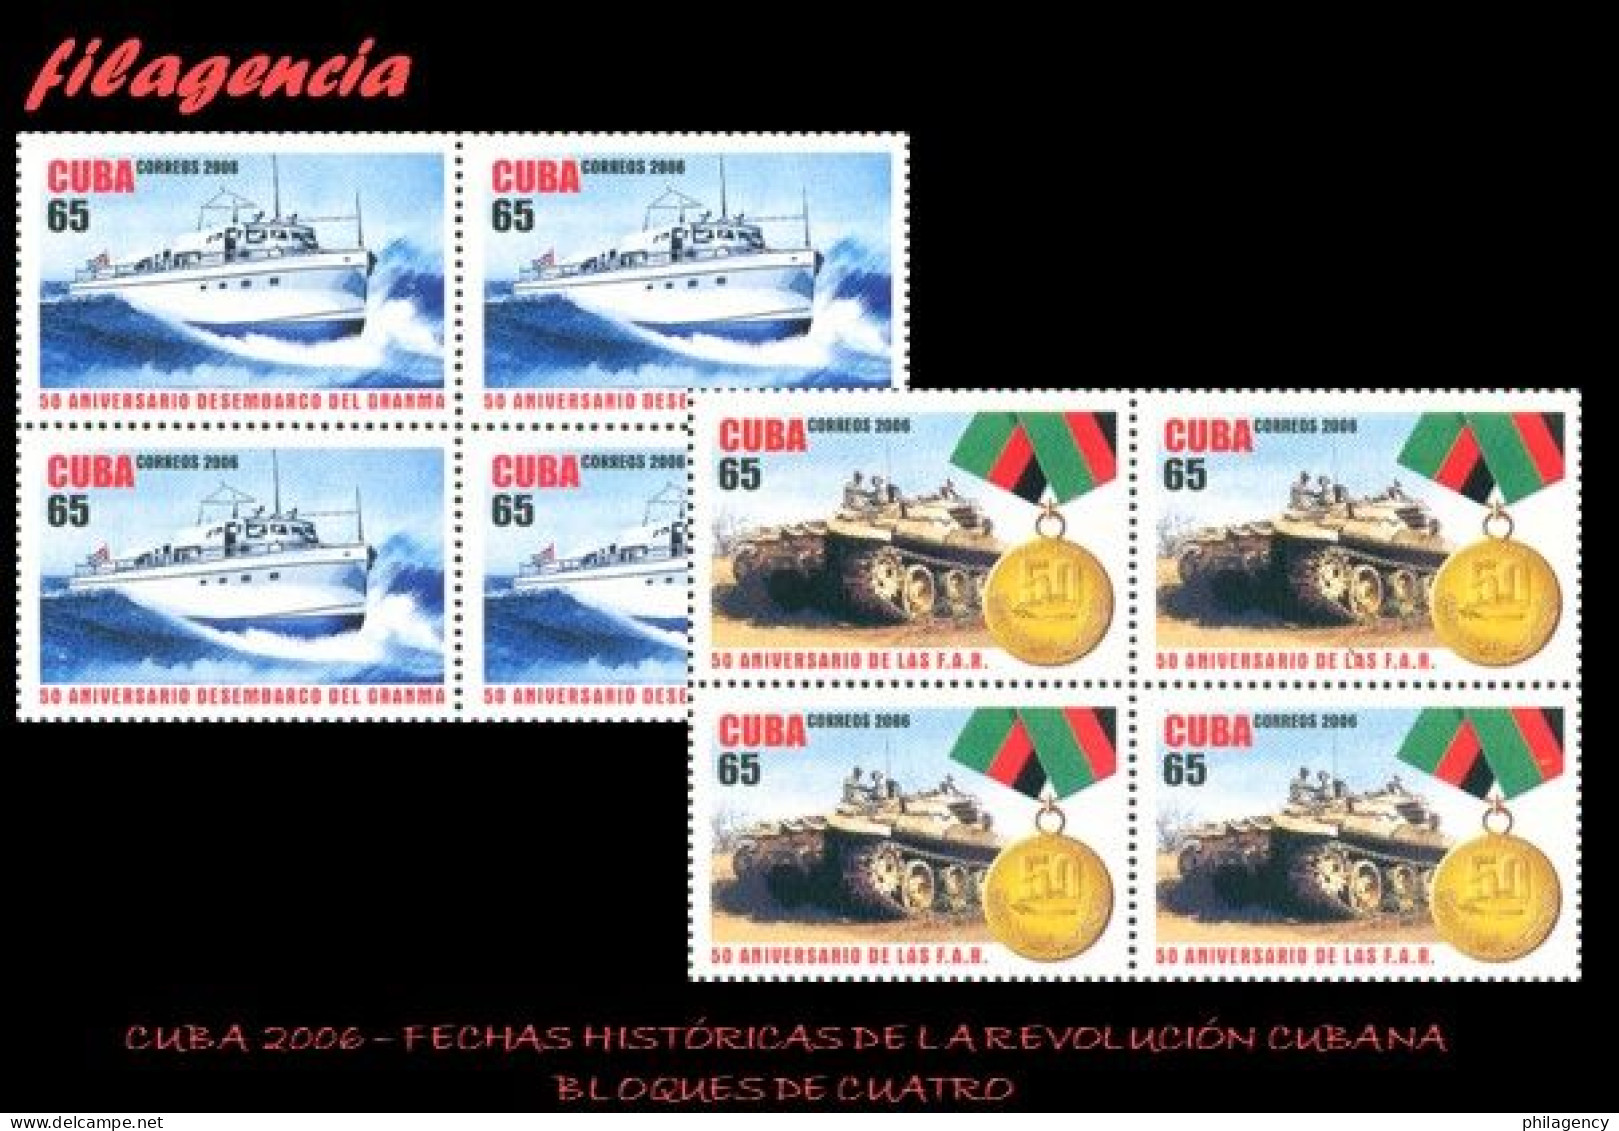 CUBA. BLOQUES DE CUATRO. 2006-32 CINCUENTENARIO DE FECHAS HISTÓRICAS DE LA REVOLUCIÓN CUBANA - Unused Stamps